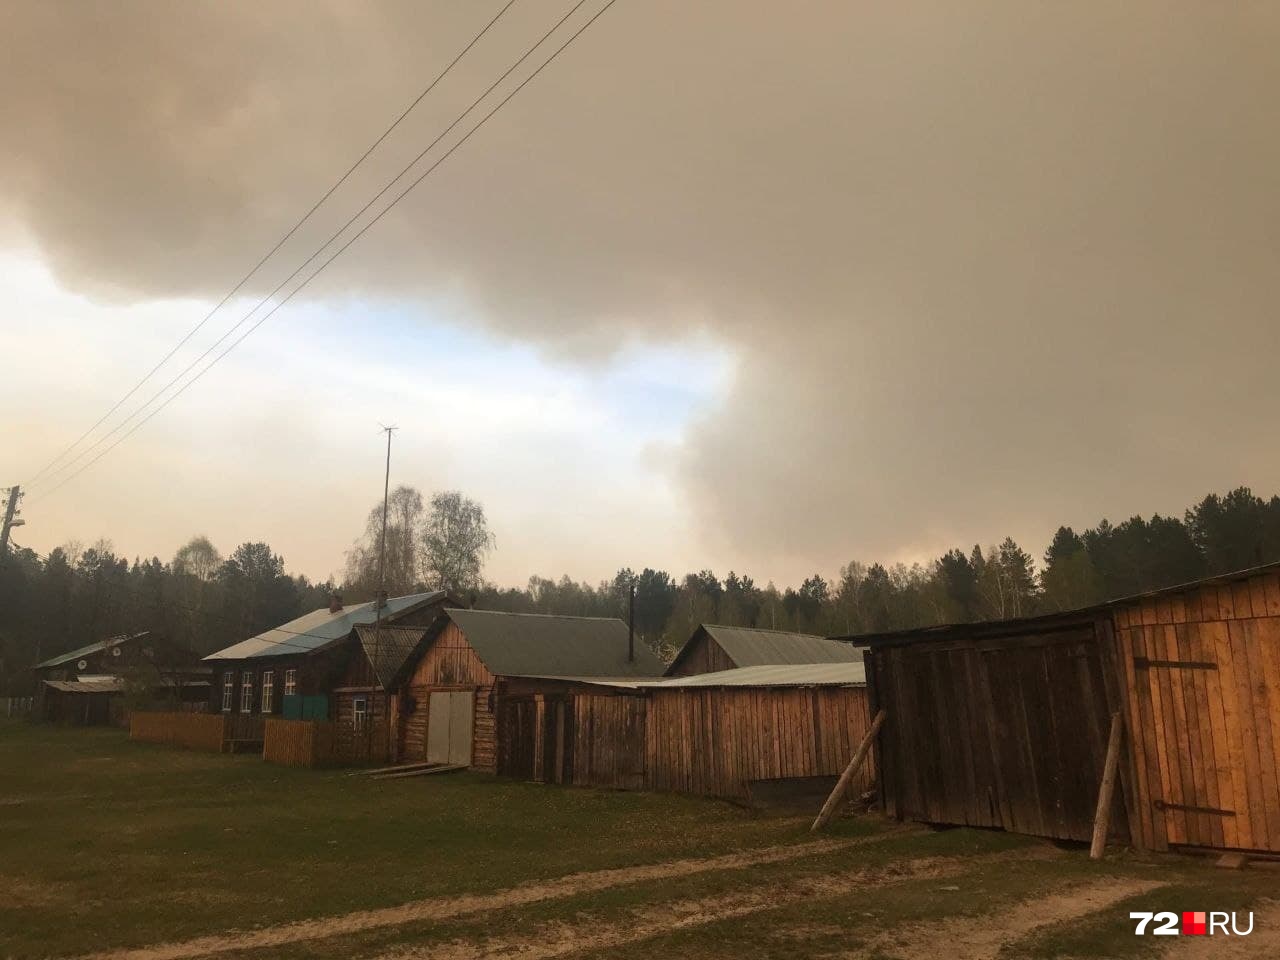 Поселок заволокло дымом от горящих лесов